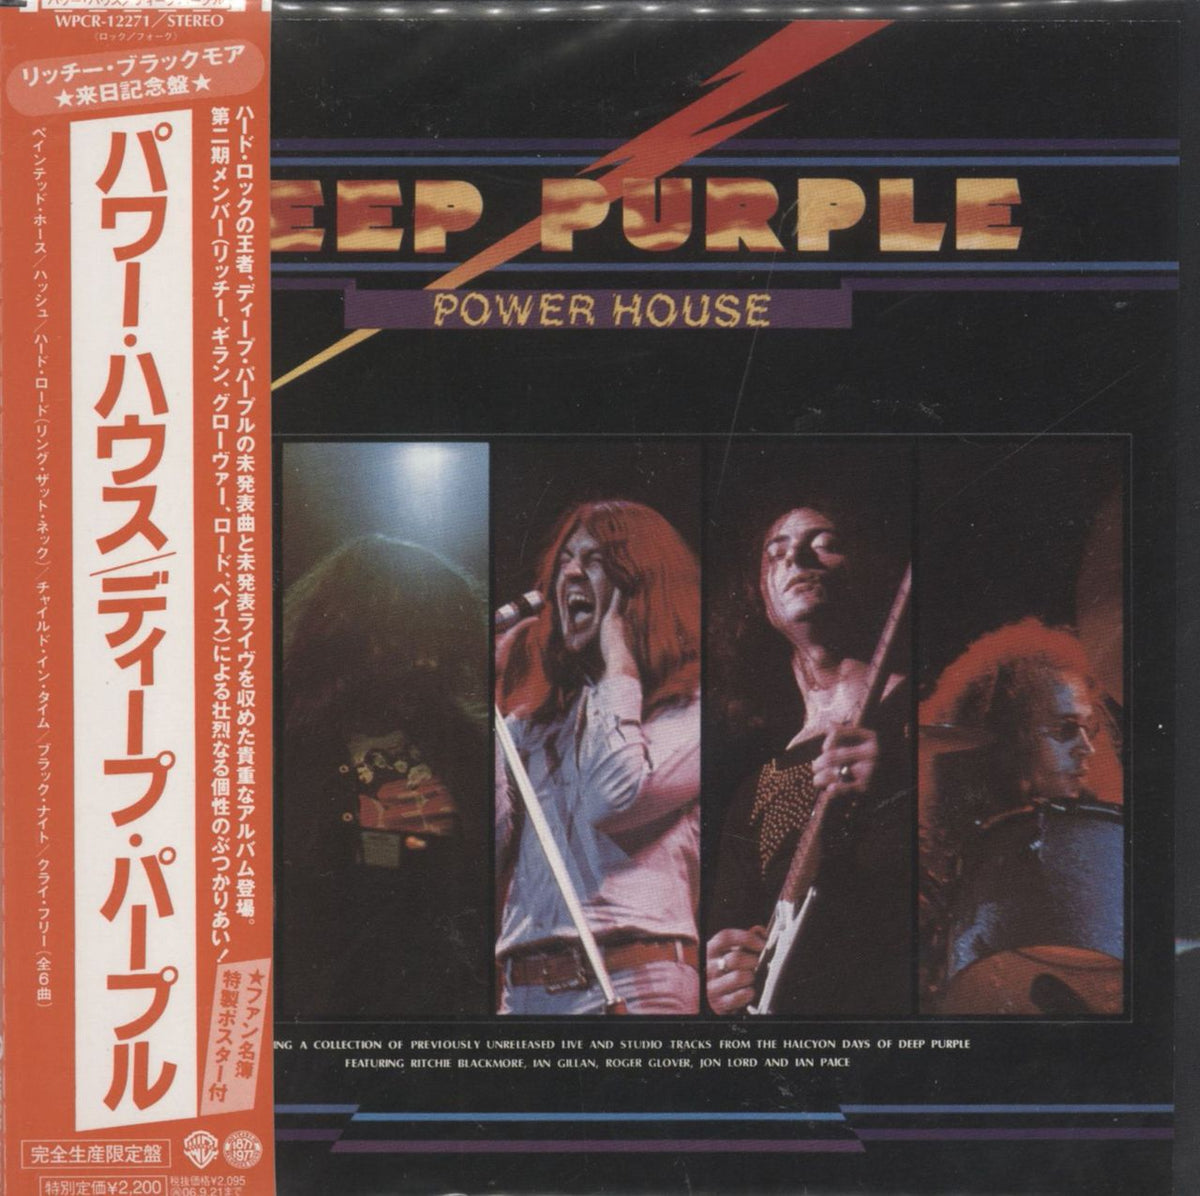 Deep Purple Power House Japanese CD album — RareVinyl.com